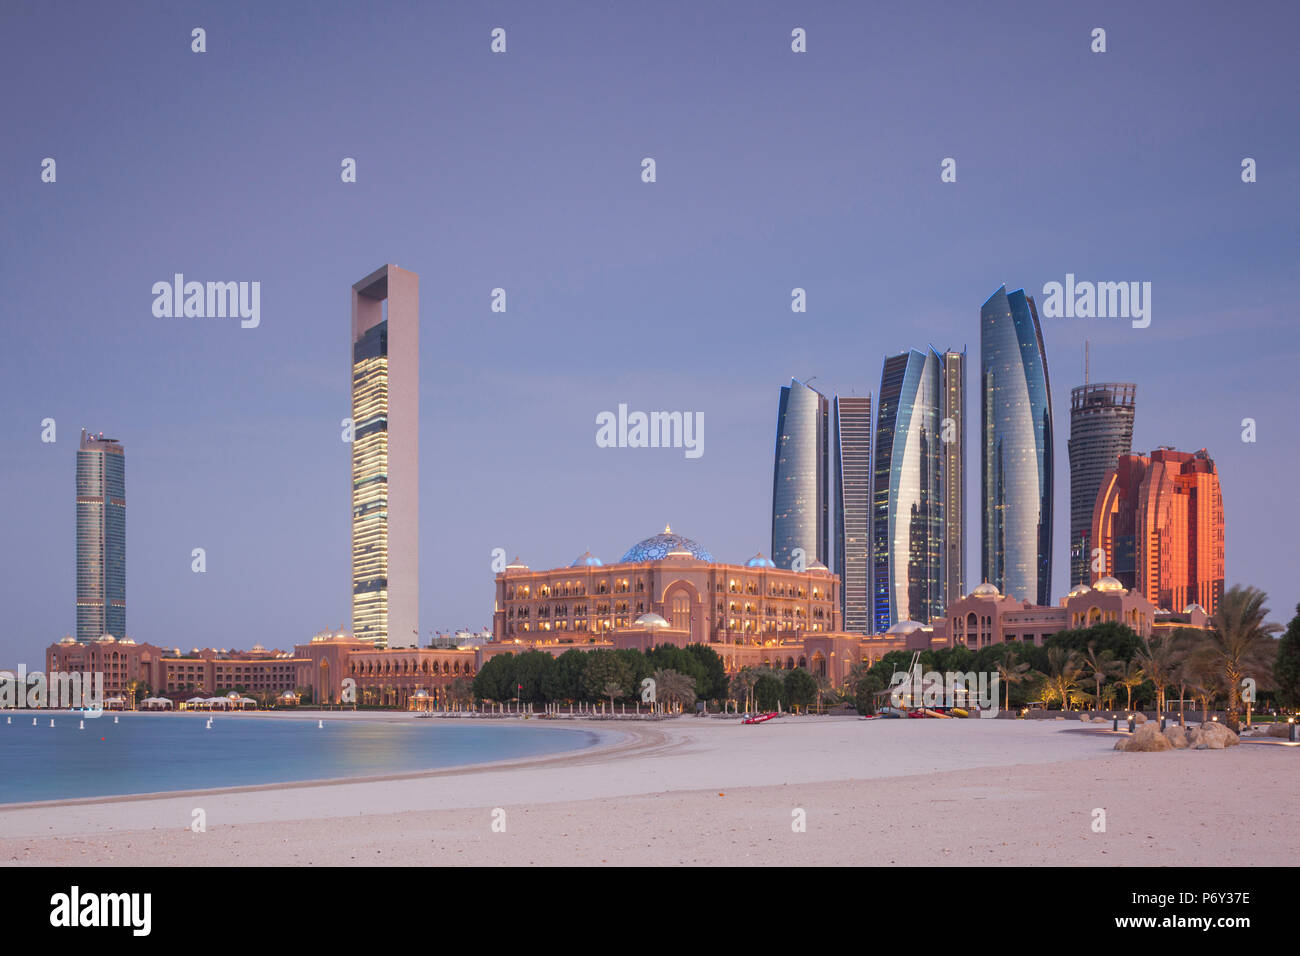 UAE, Abu Dhabi, skyline, Nations Towers, ADNOC Tower, Etihad Towers and Emirates Palace Hotel, dusk Stock Photo